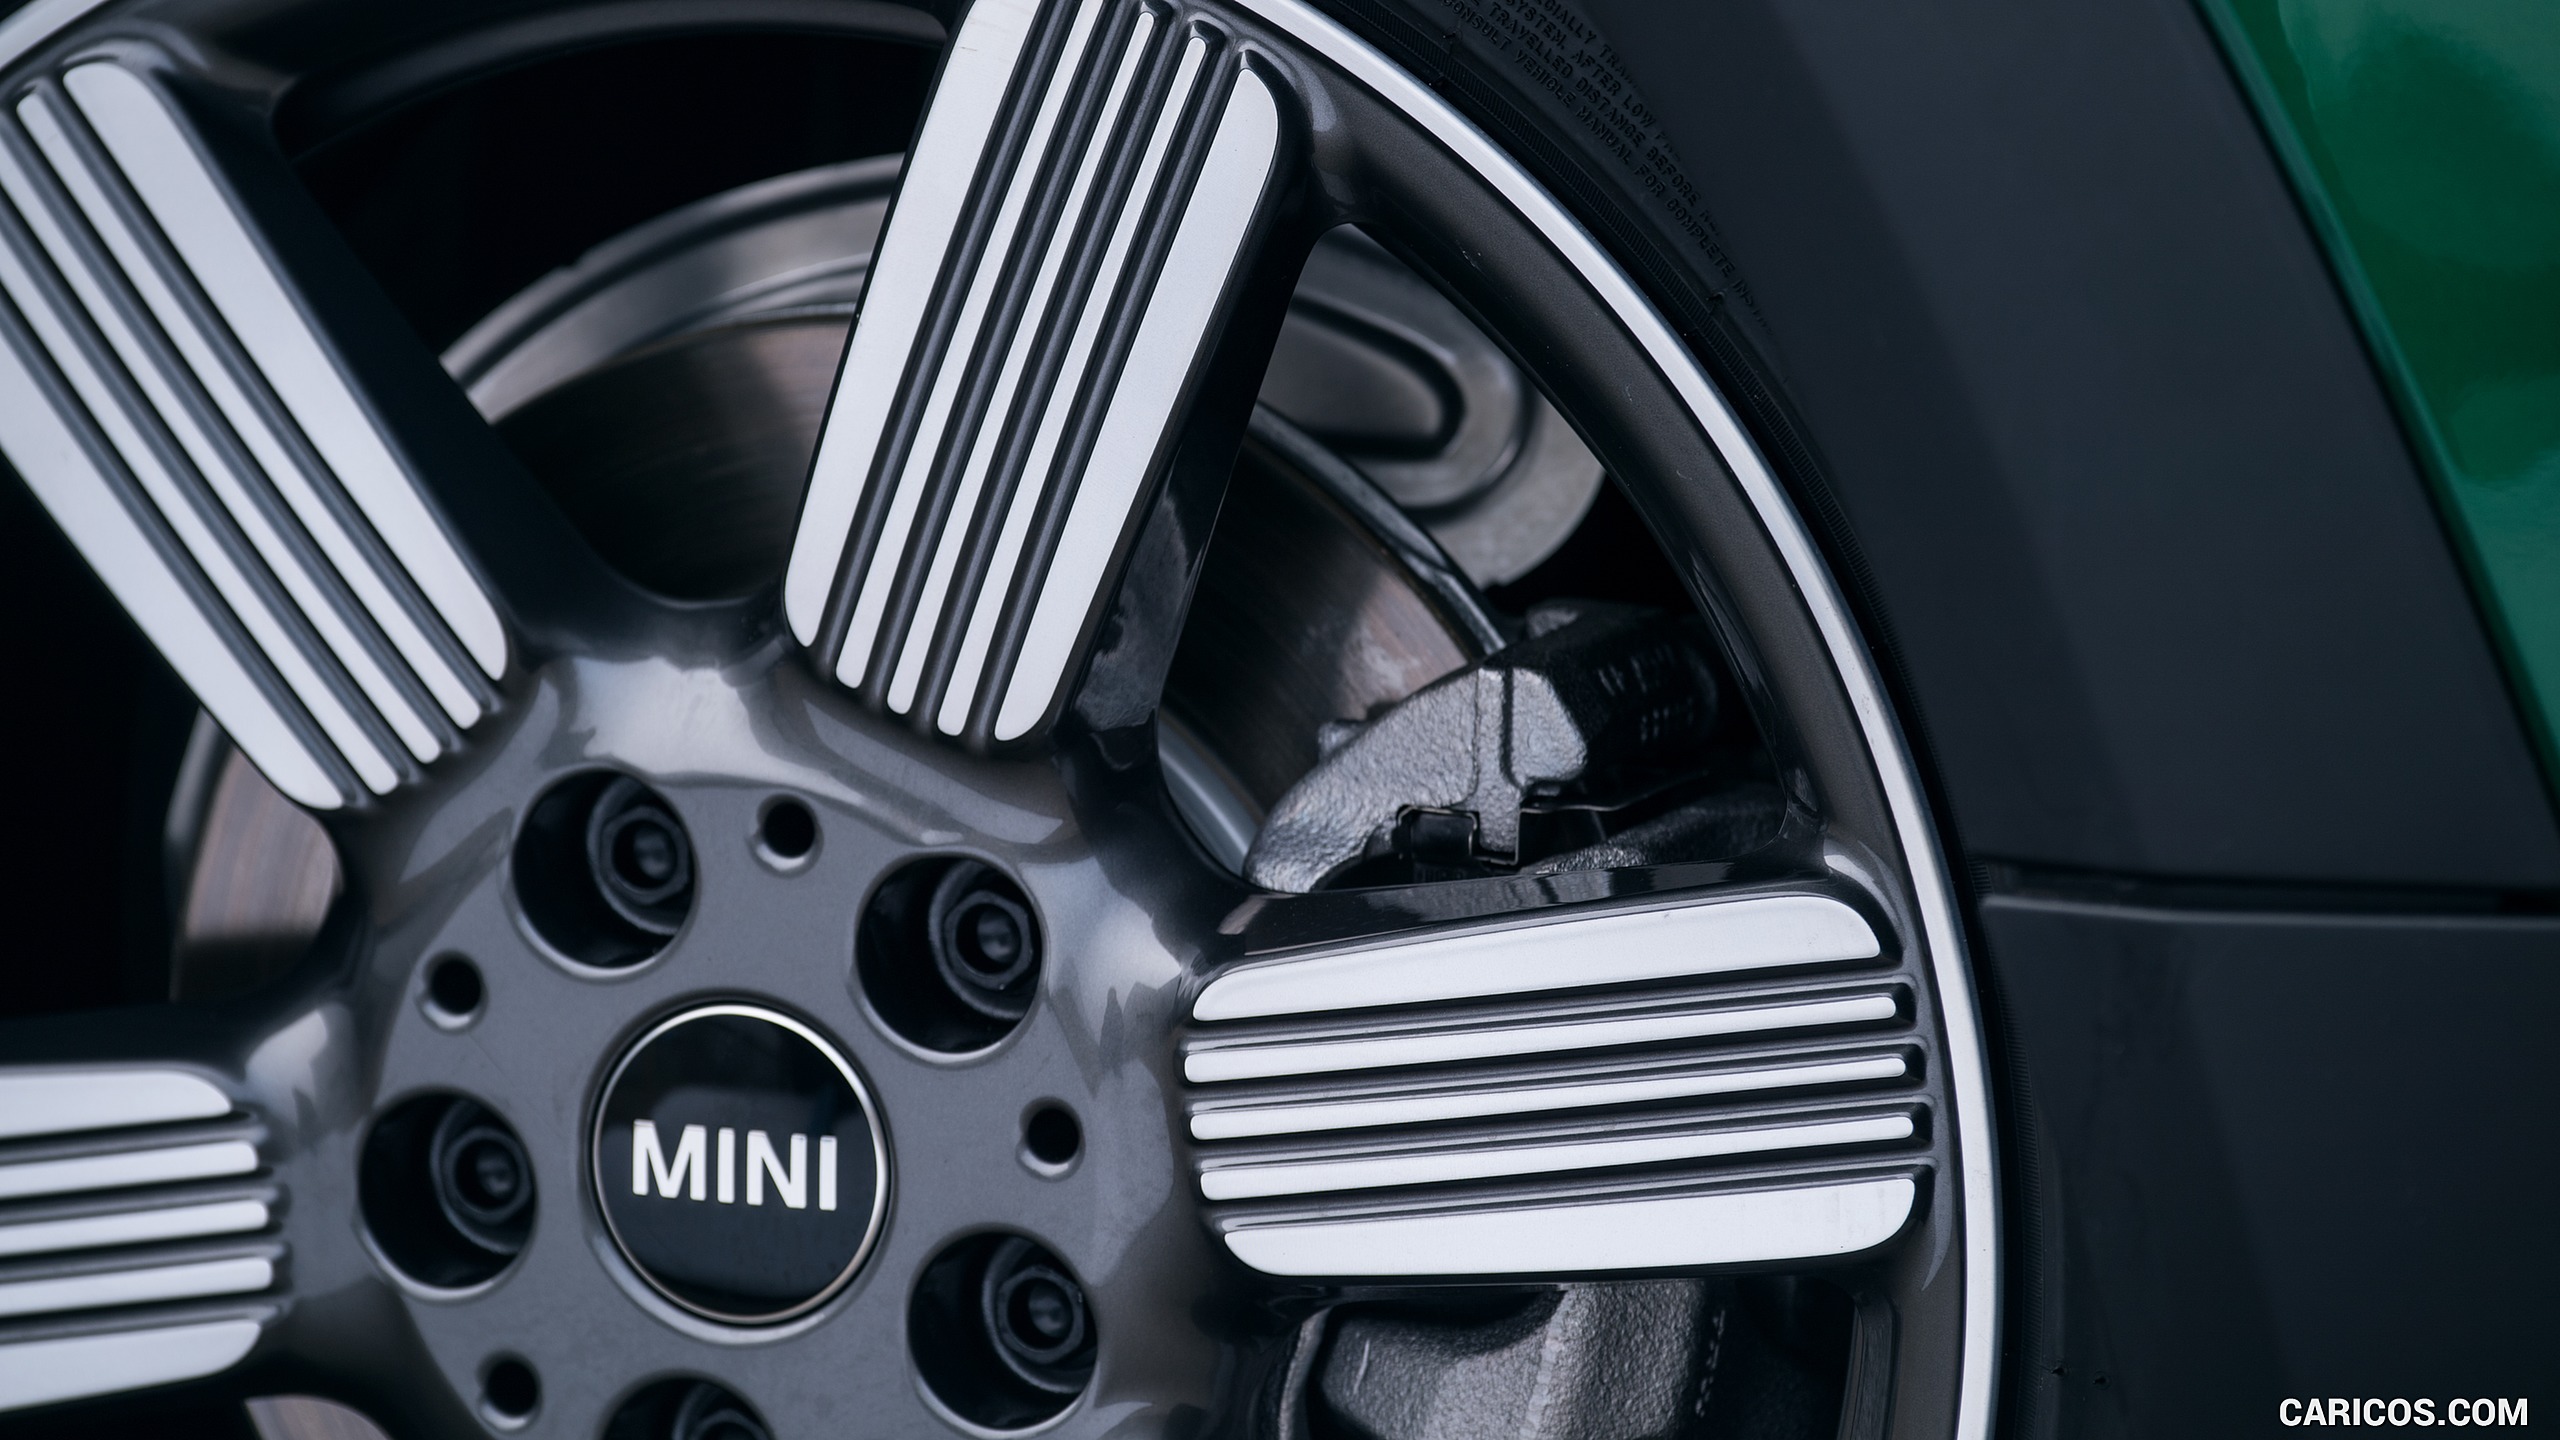 2019 MINI Cooper 3-Door 60 Years Edition - Wheel, #63 of 102